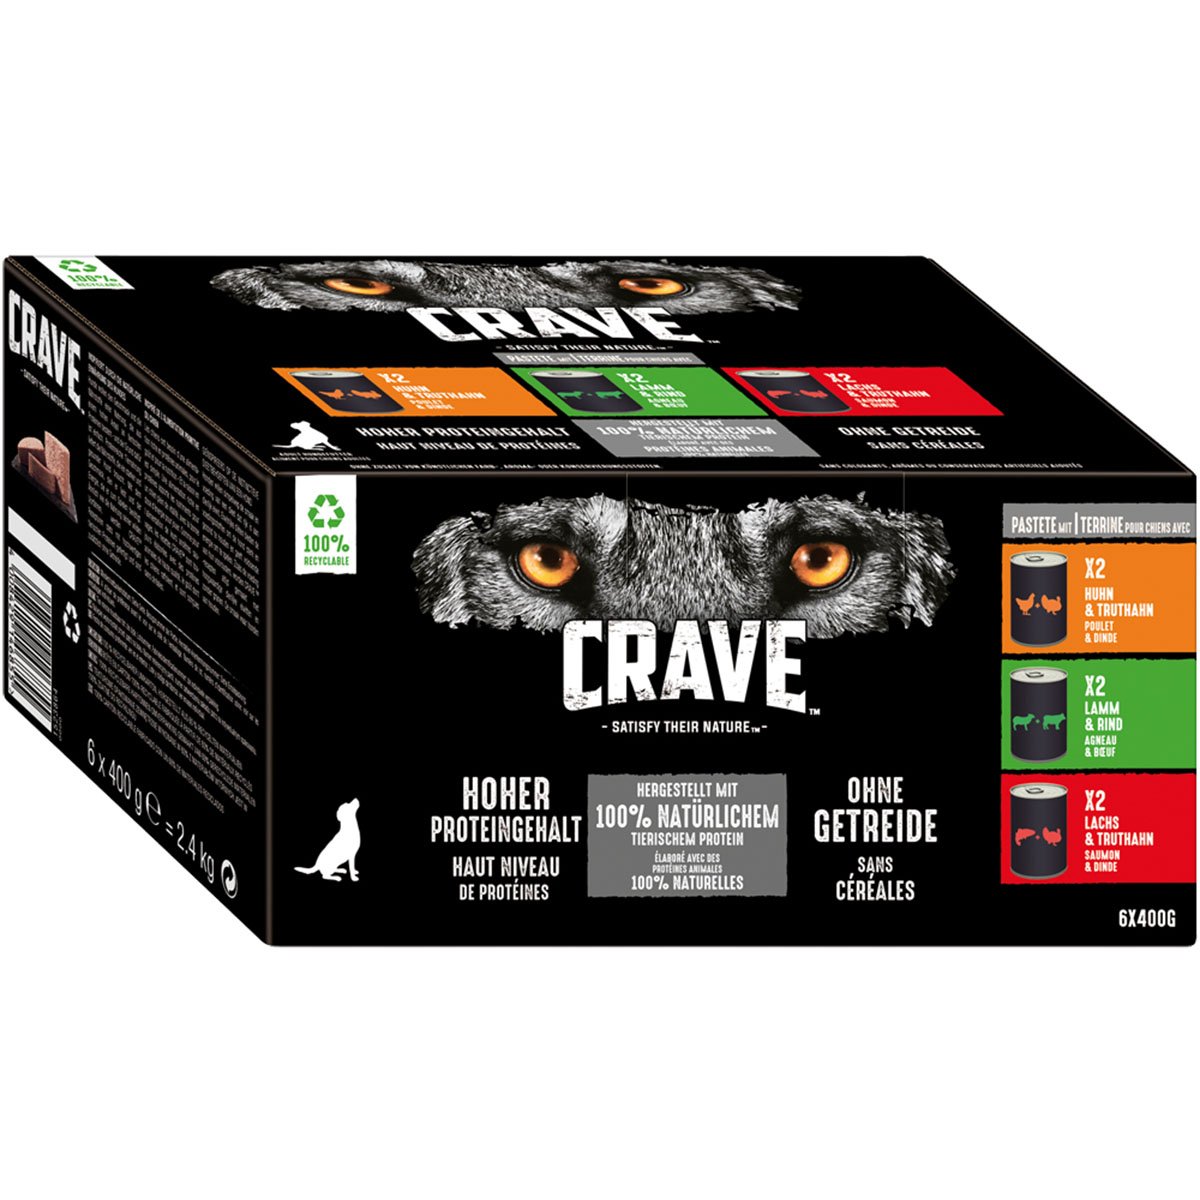 CRAVE Adult Pastete Multipack 6x400g von Crave